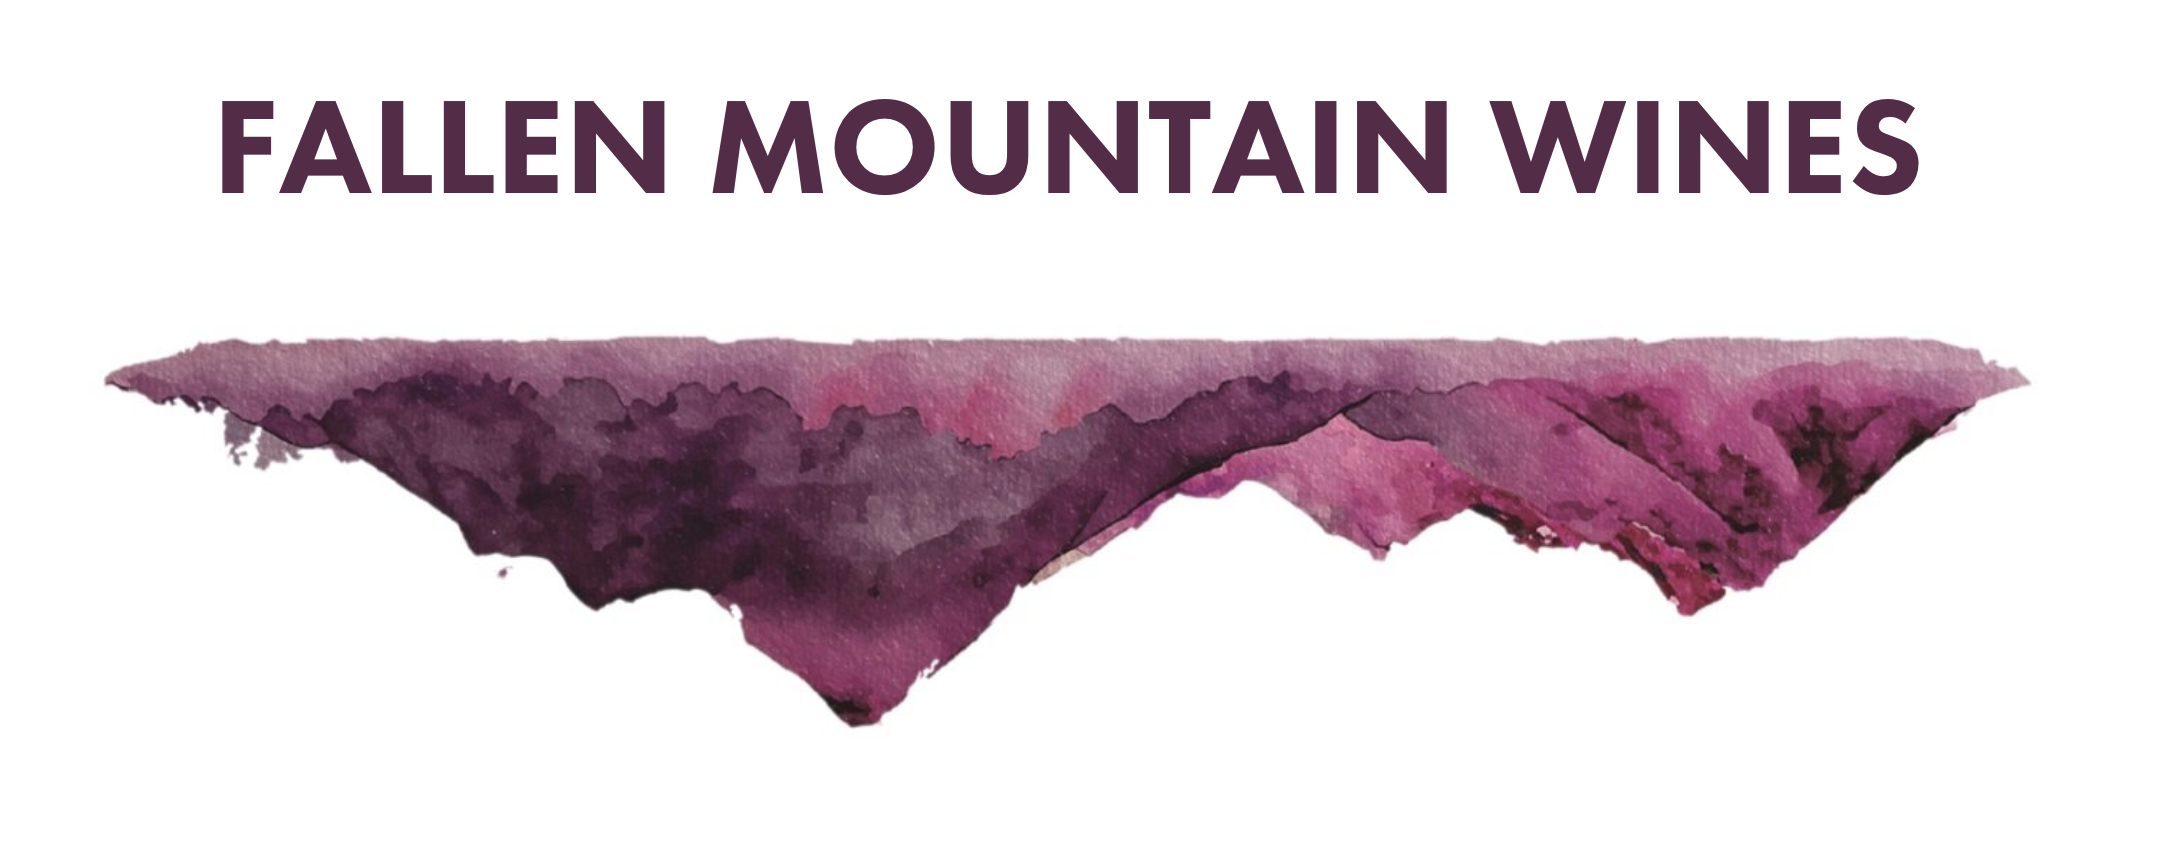 Fallen Mountain Wines